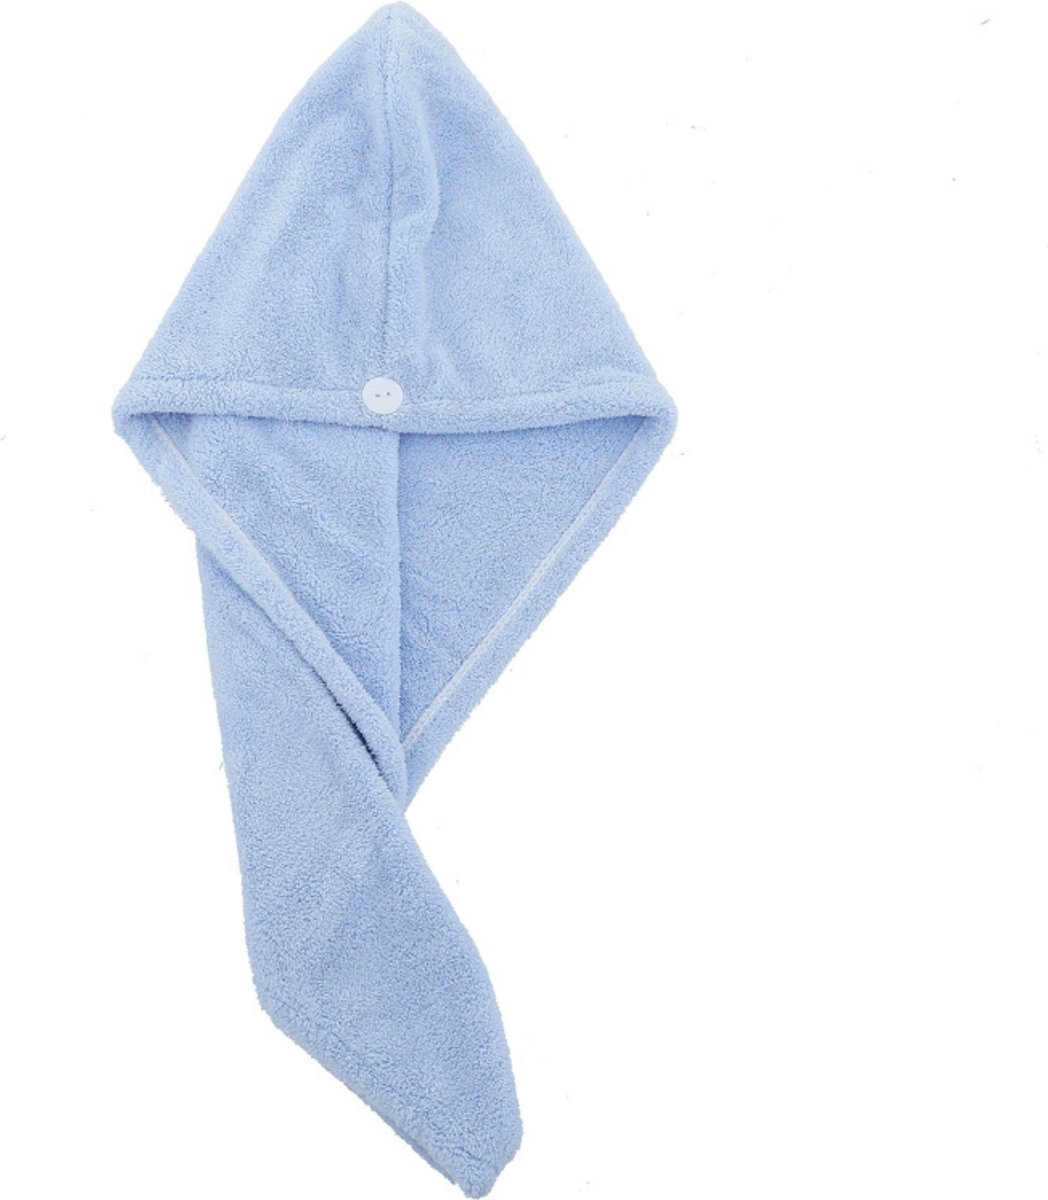 Haarhanddoek - Hoofdhanddoek - Hair towel - Sneldrogende handdoek - Haartulband - Haardroger - Haar handdoek - Blauw